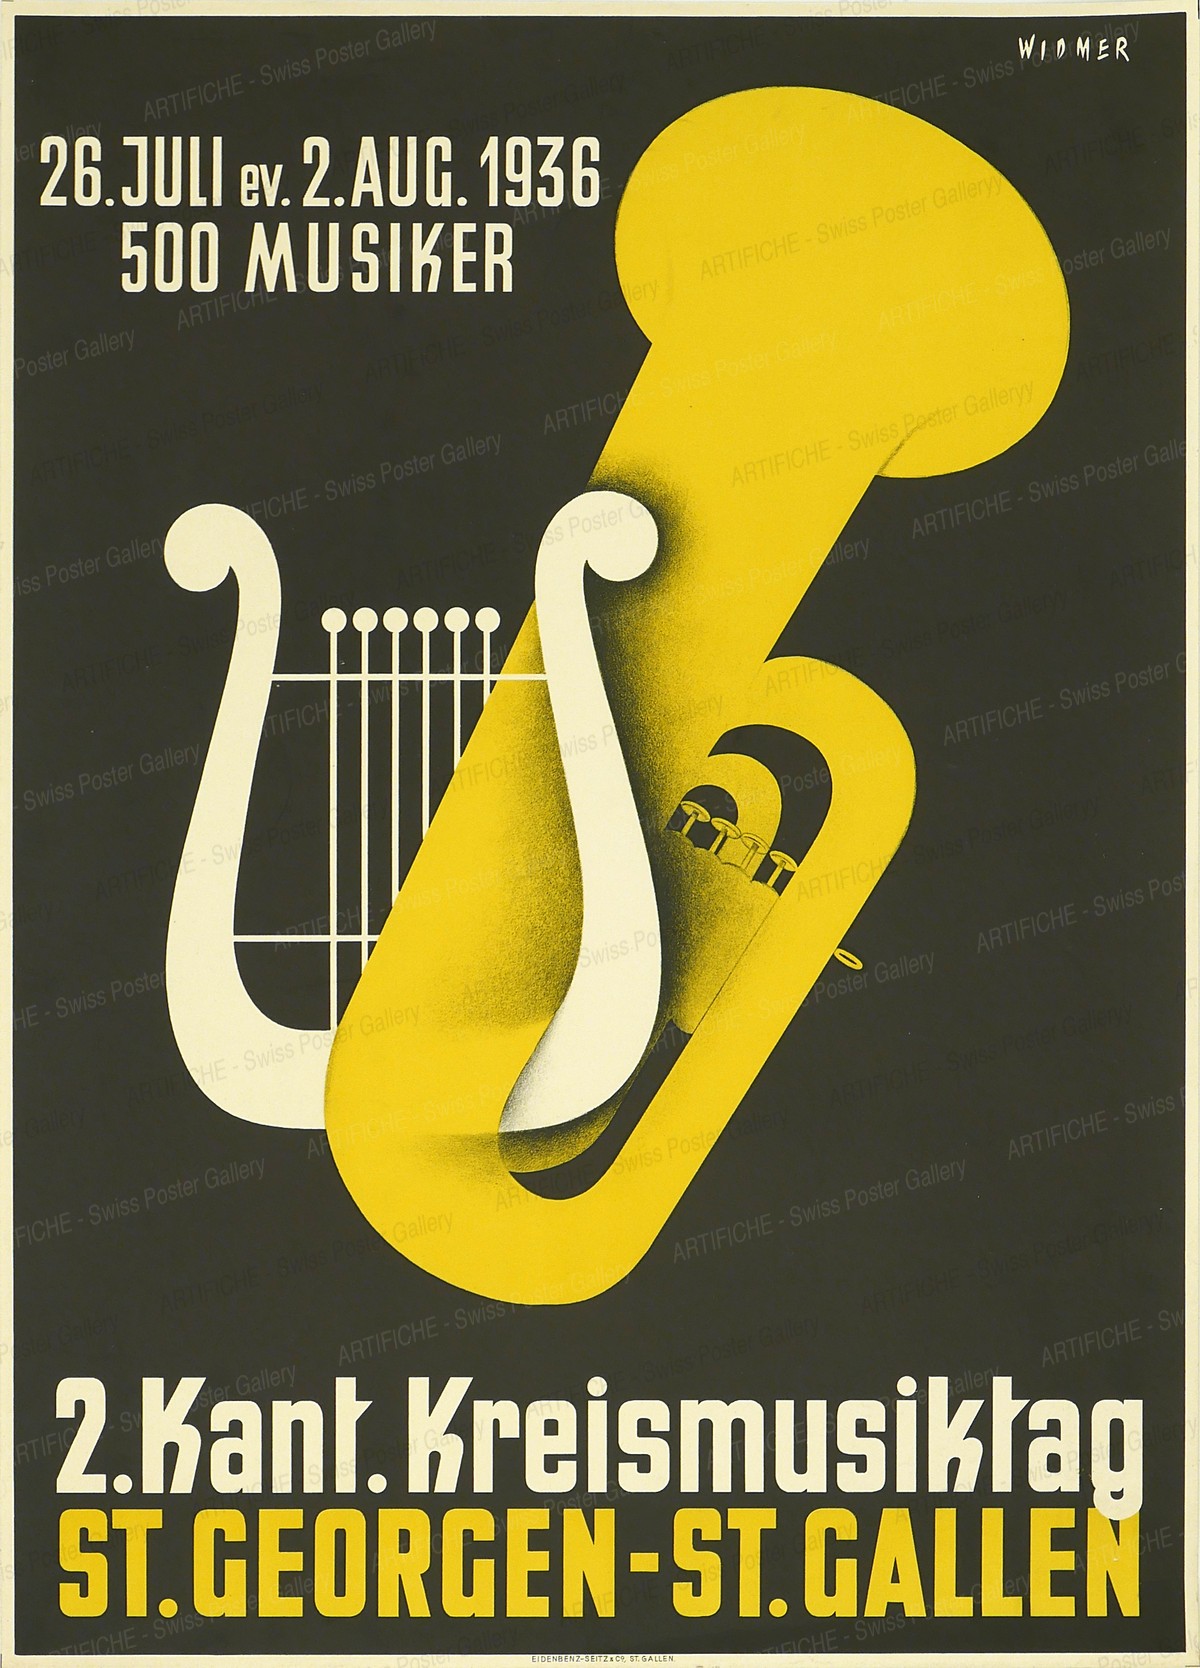 Music day St. Georgen – St. Gallen 1936, Alfred Widmer